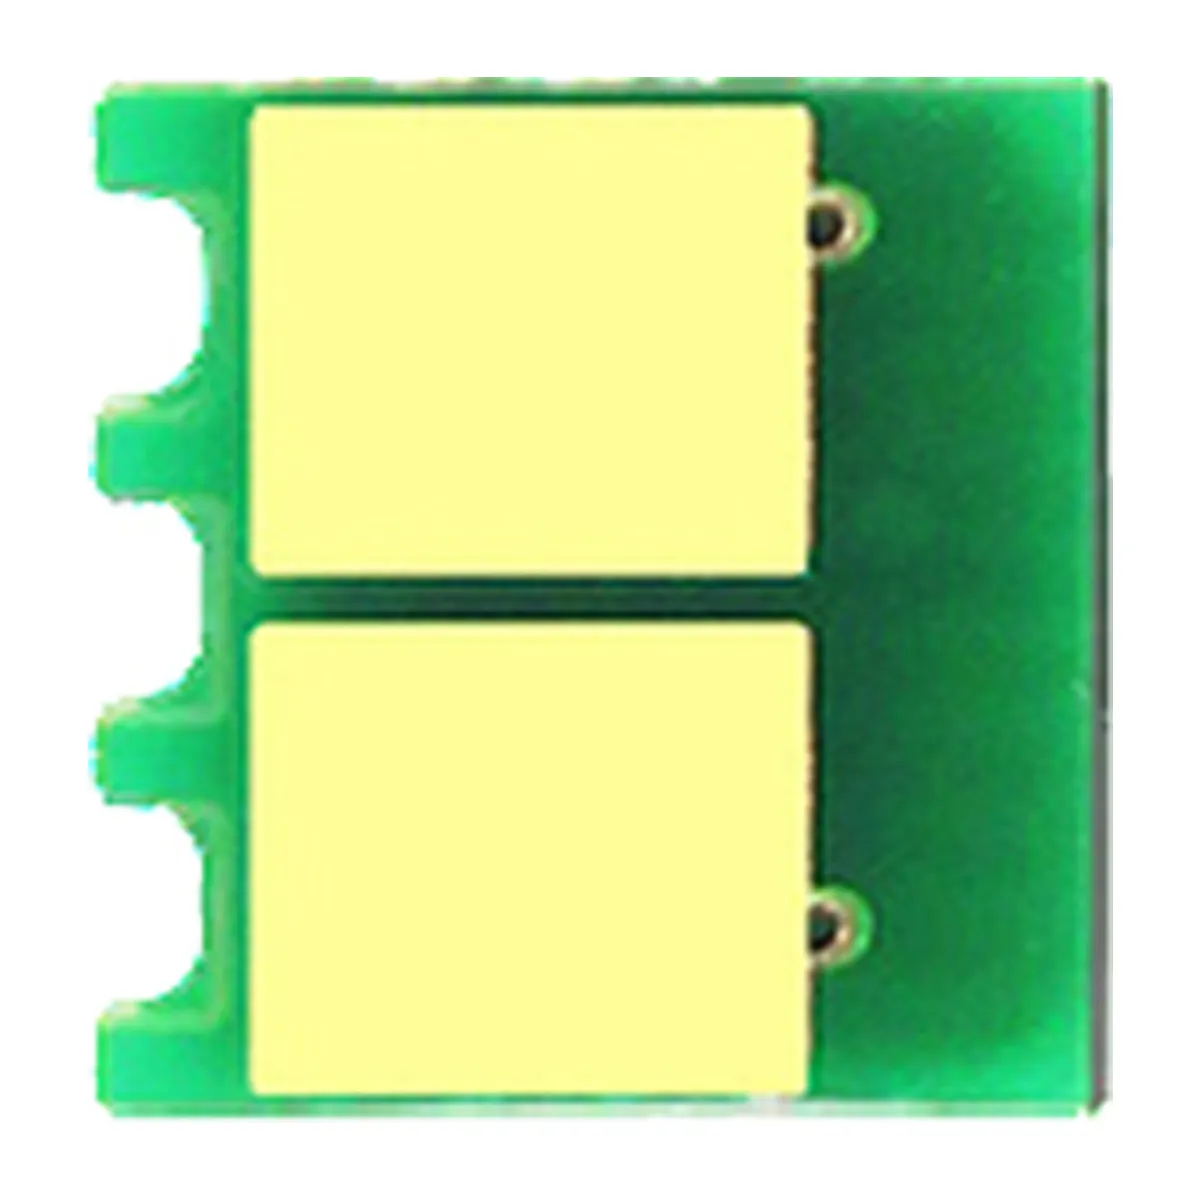 CE411A CE412A CE413A Für HP-Drucker-Reset-Toner chips für HP Laser jet 400-Farbe M451nw